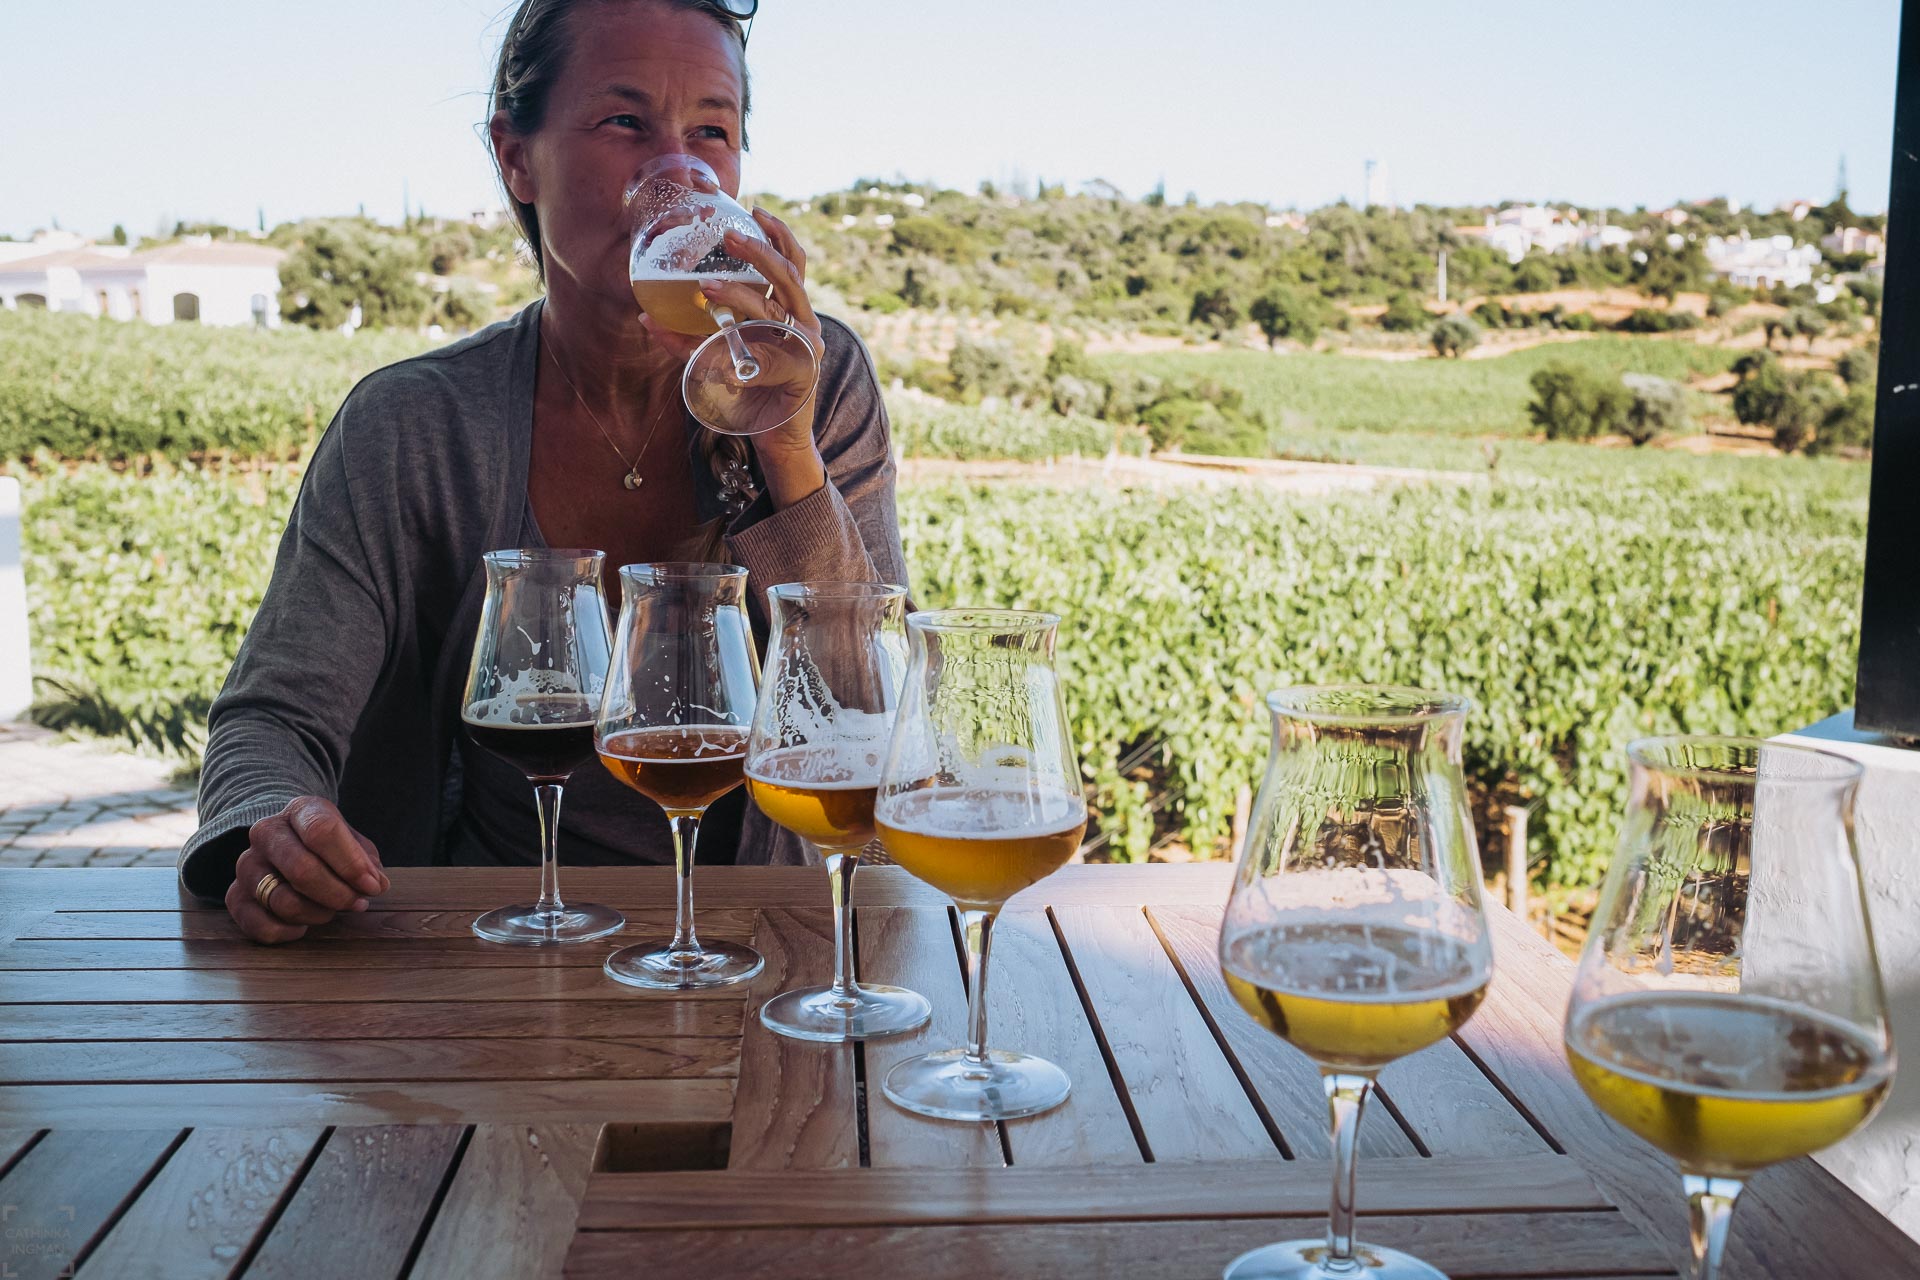 Lokalproducerat; Vingårdar på Algarve och så lite öl